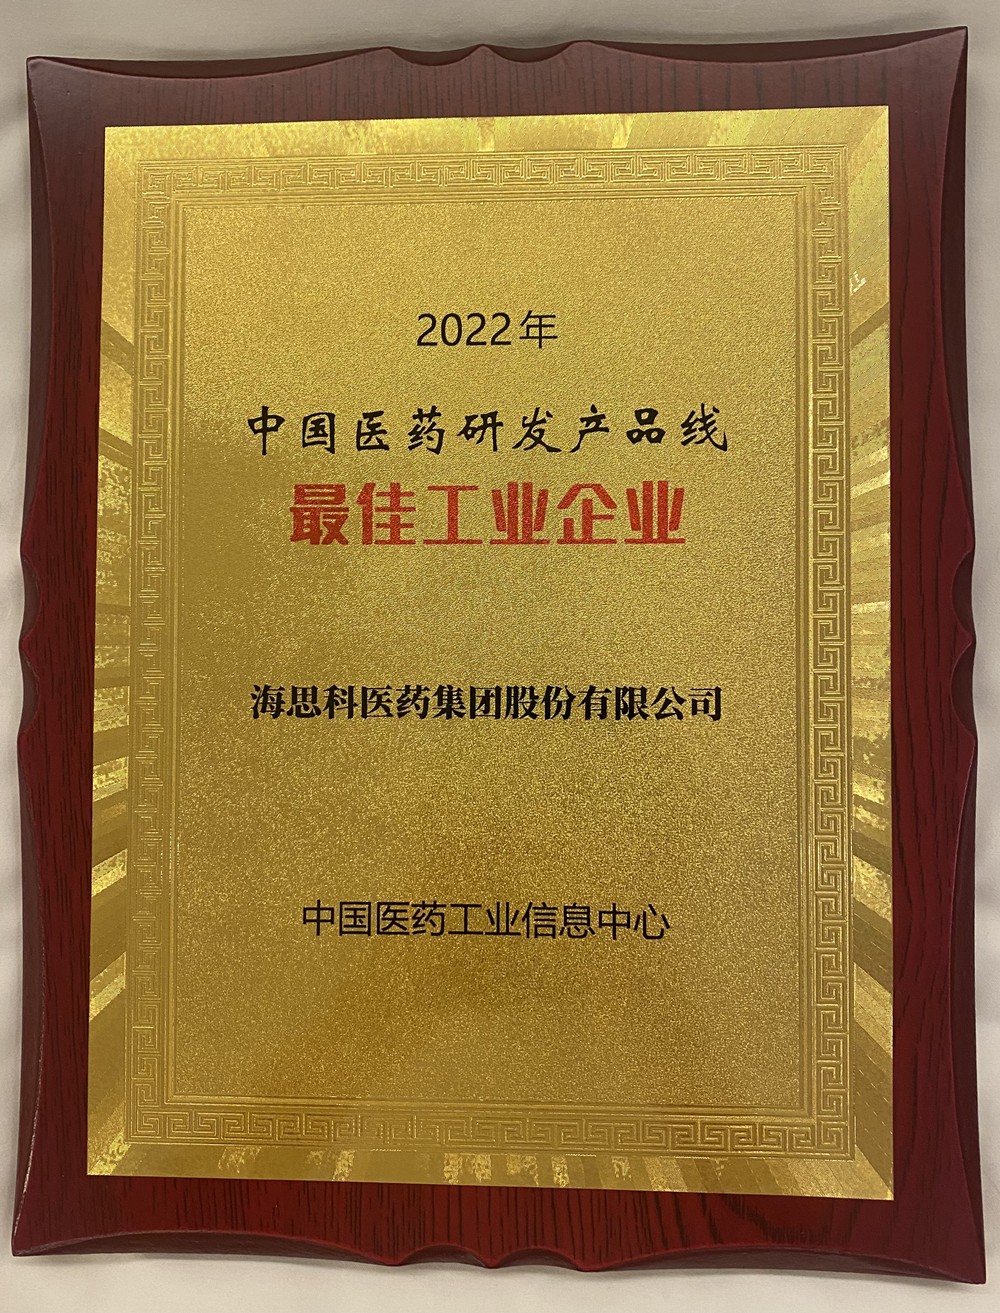 太阳成集团tyc122cc荣获中国医药研发产品线最佳工业企业